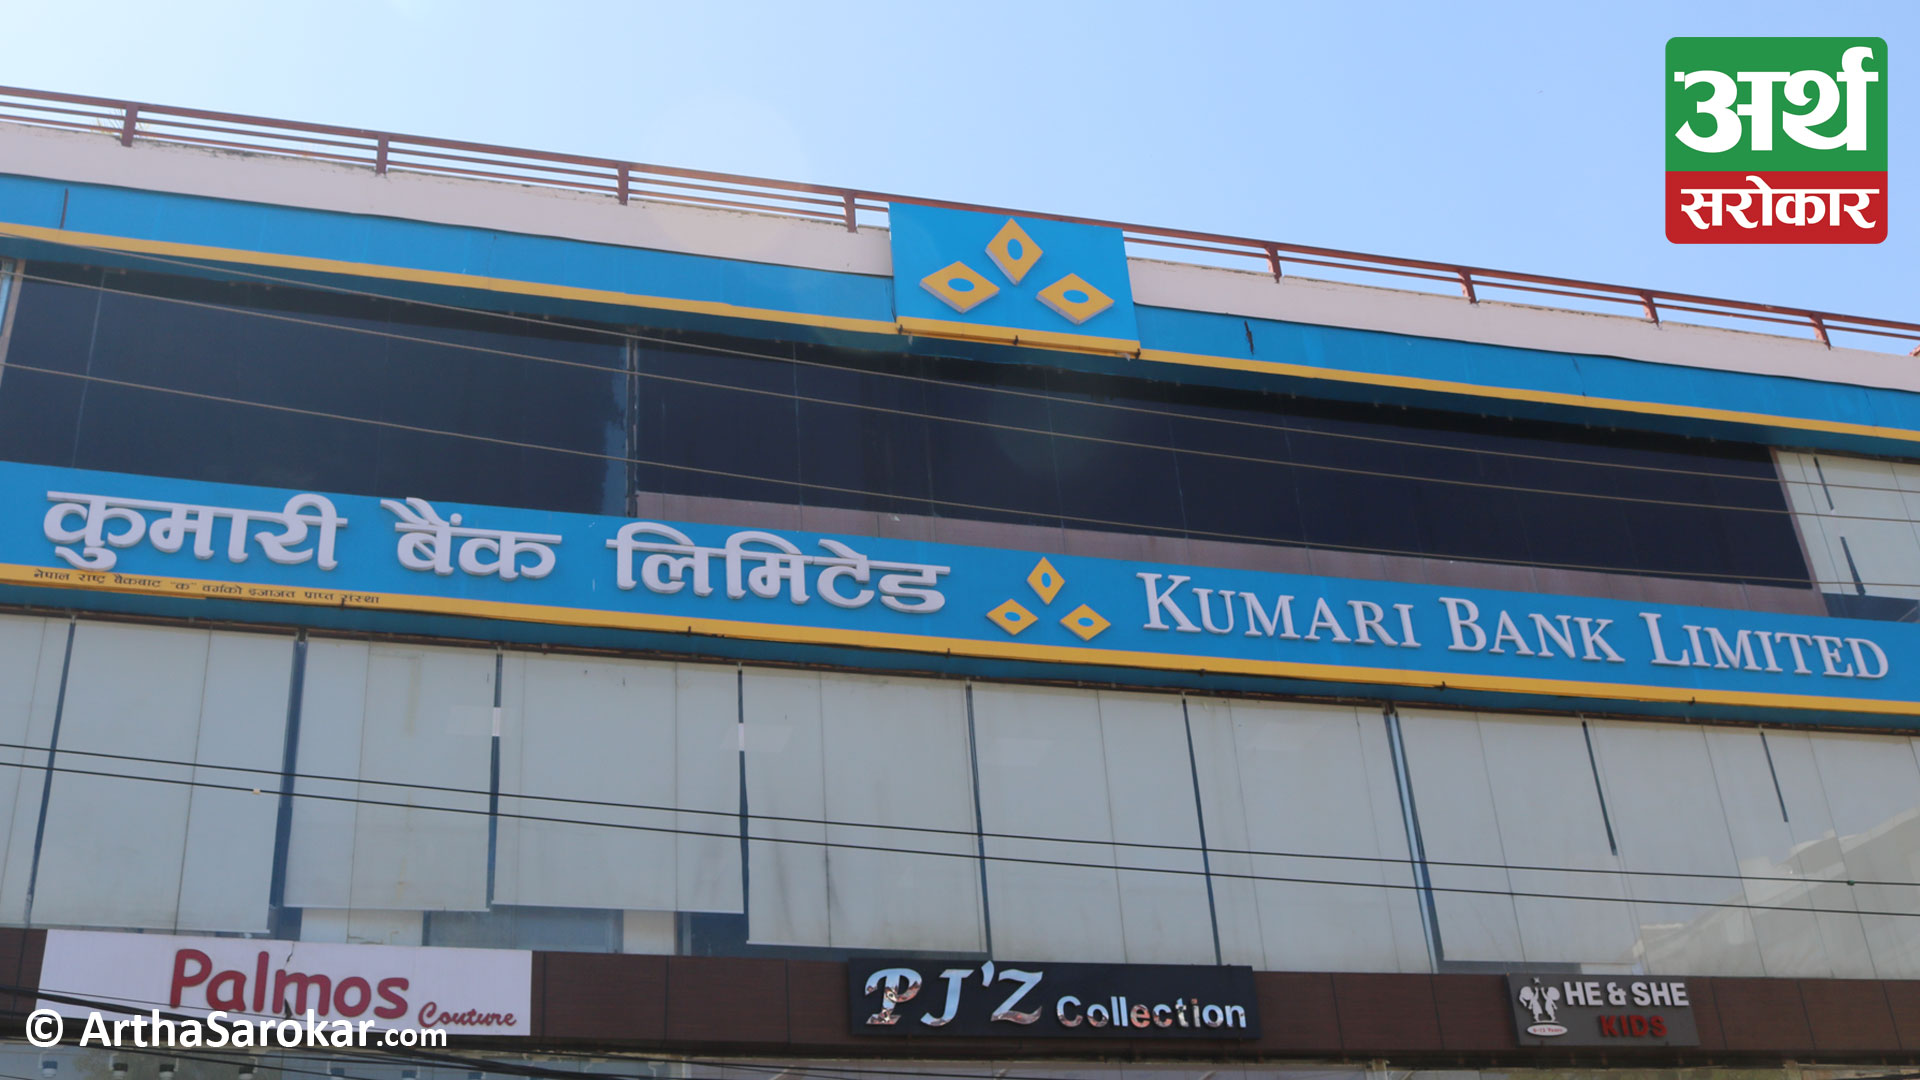 Kumari Bank brought founder shares for sale